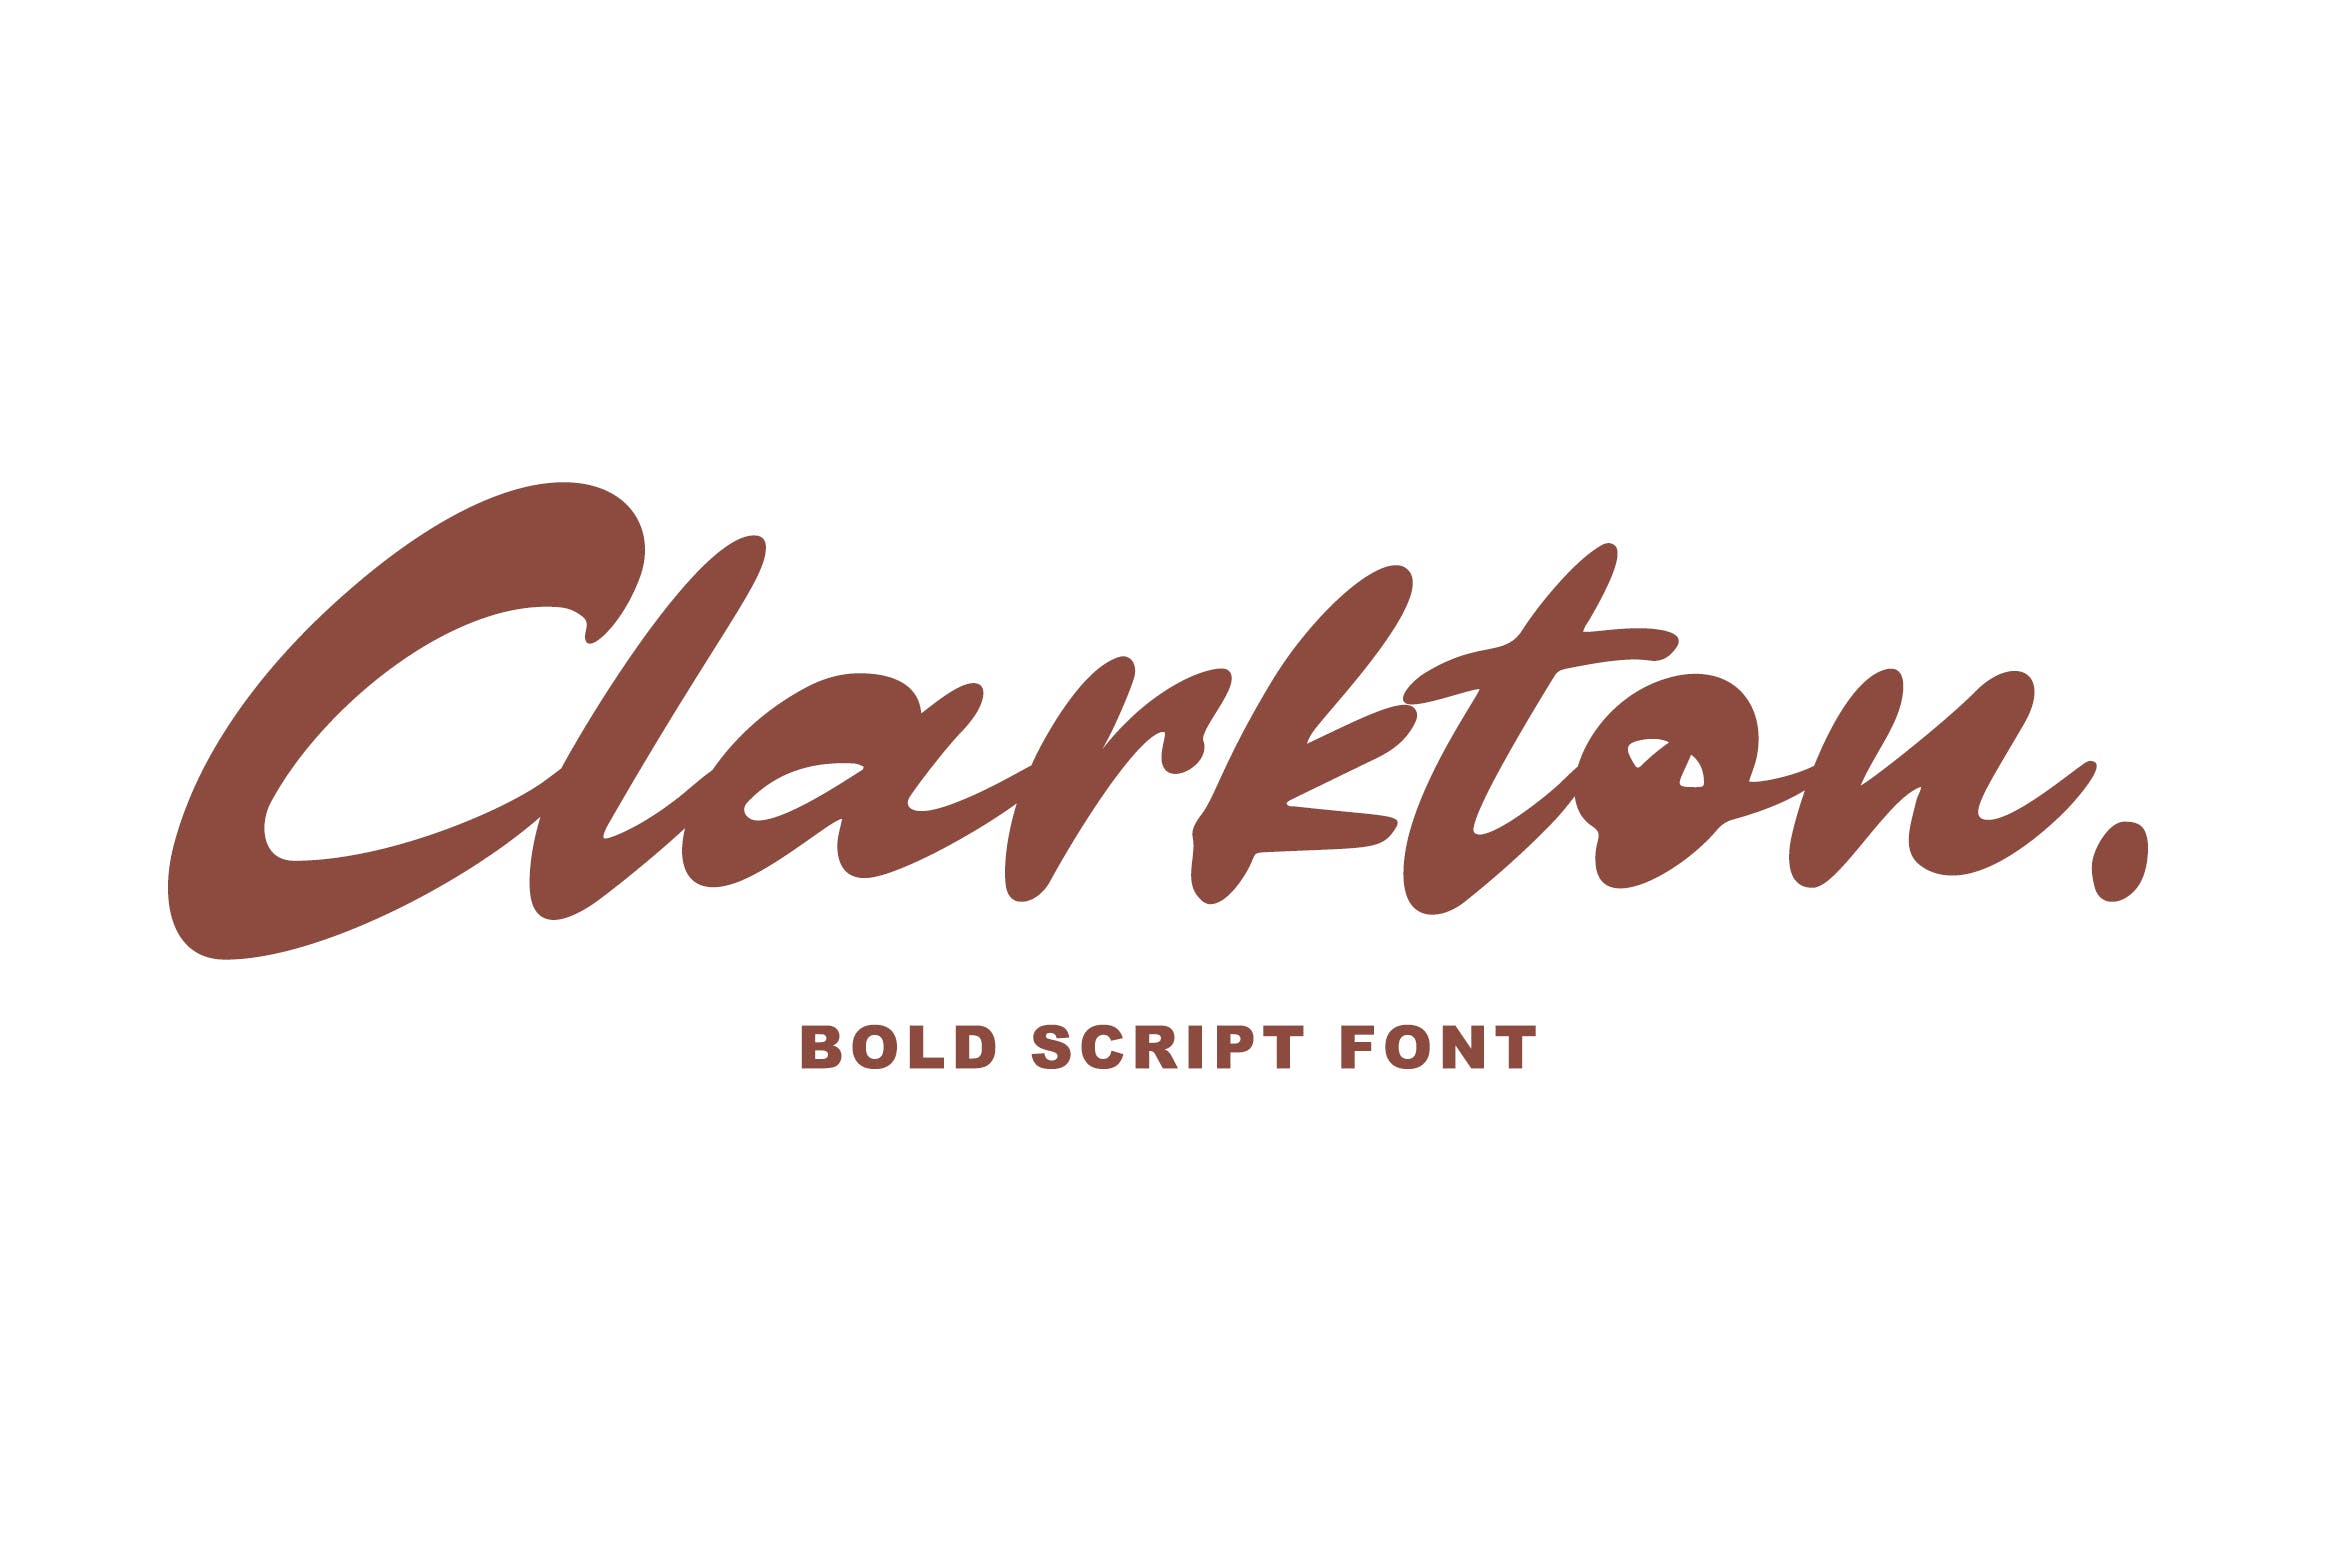 粗体画笔手写英文字体16图库精选 Clarkton – Bold Script Font插图